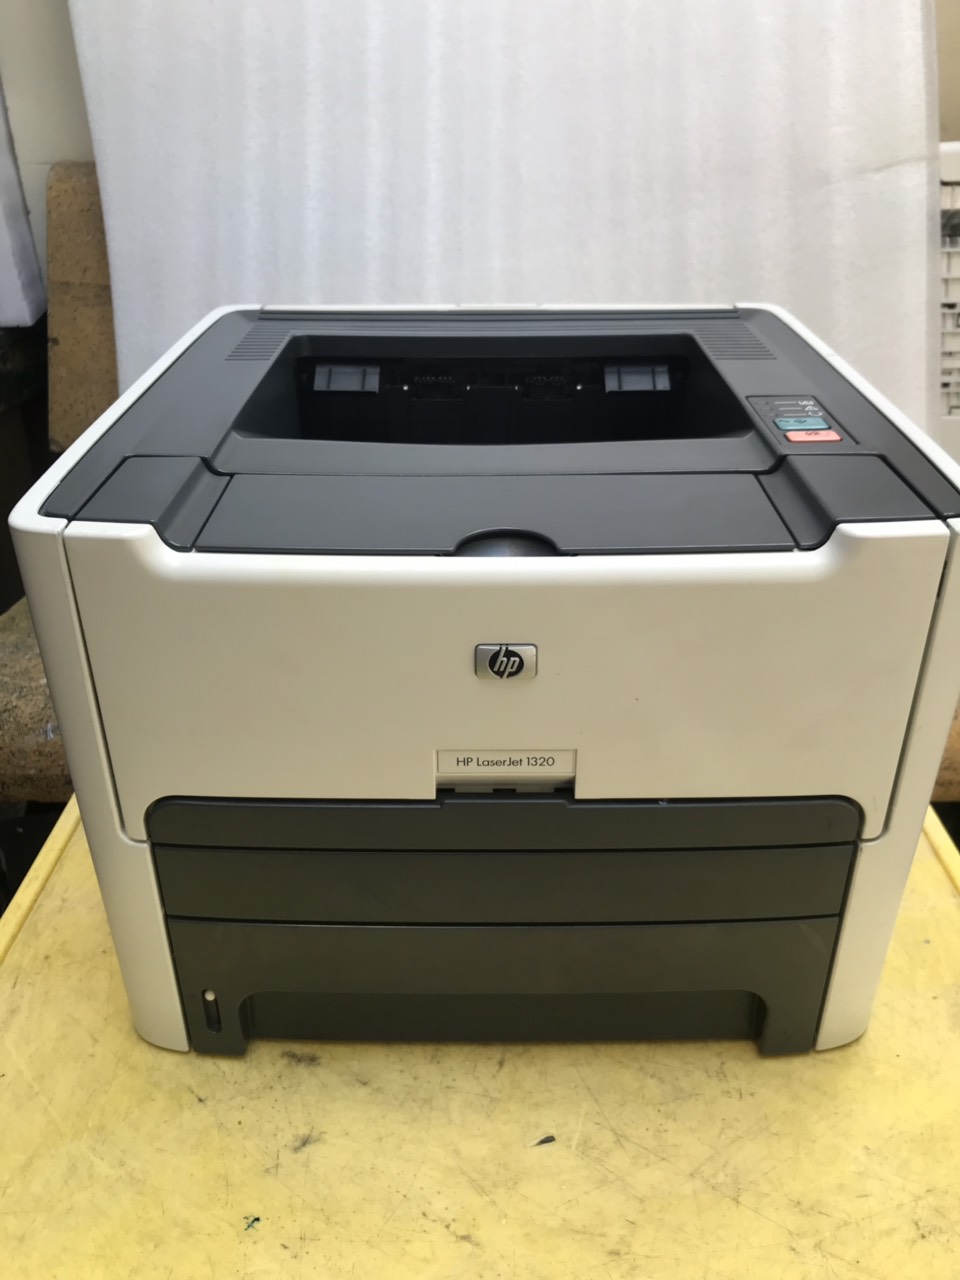 Máy in cũ HP LaserJet 1320 Printer (Q5927A)